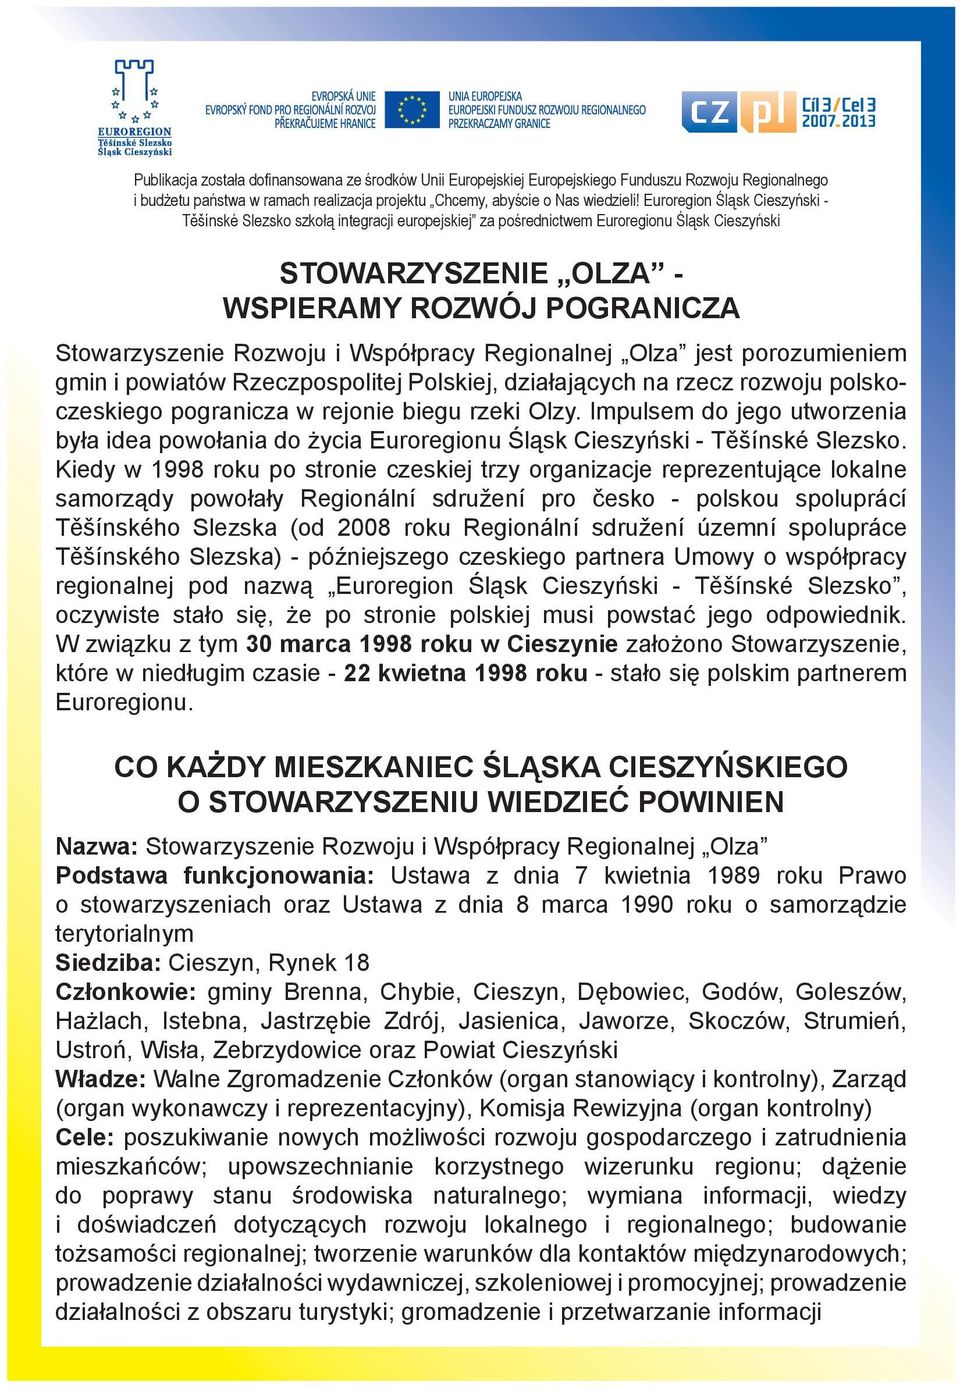 Współpracy Regionalnej Olza jest porozumieniem gmin i powiatów Rzeczpospolitej Polskiej, działających na rzecz rozwoju polskoczeskiego pogranicza w rejonie biegu rzeki Olzy.